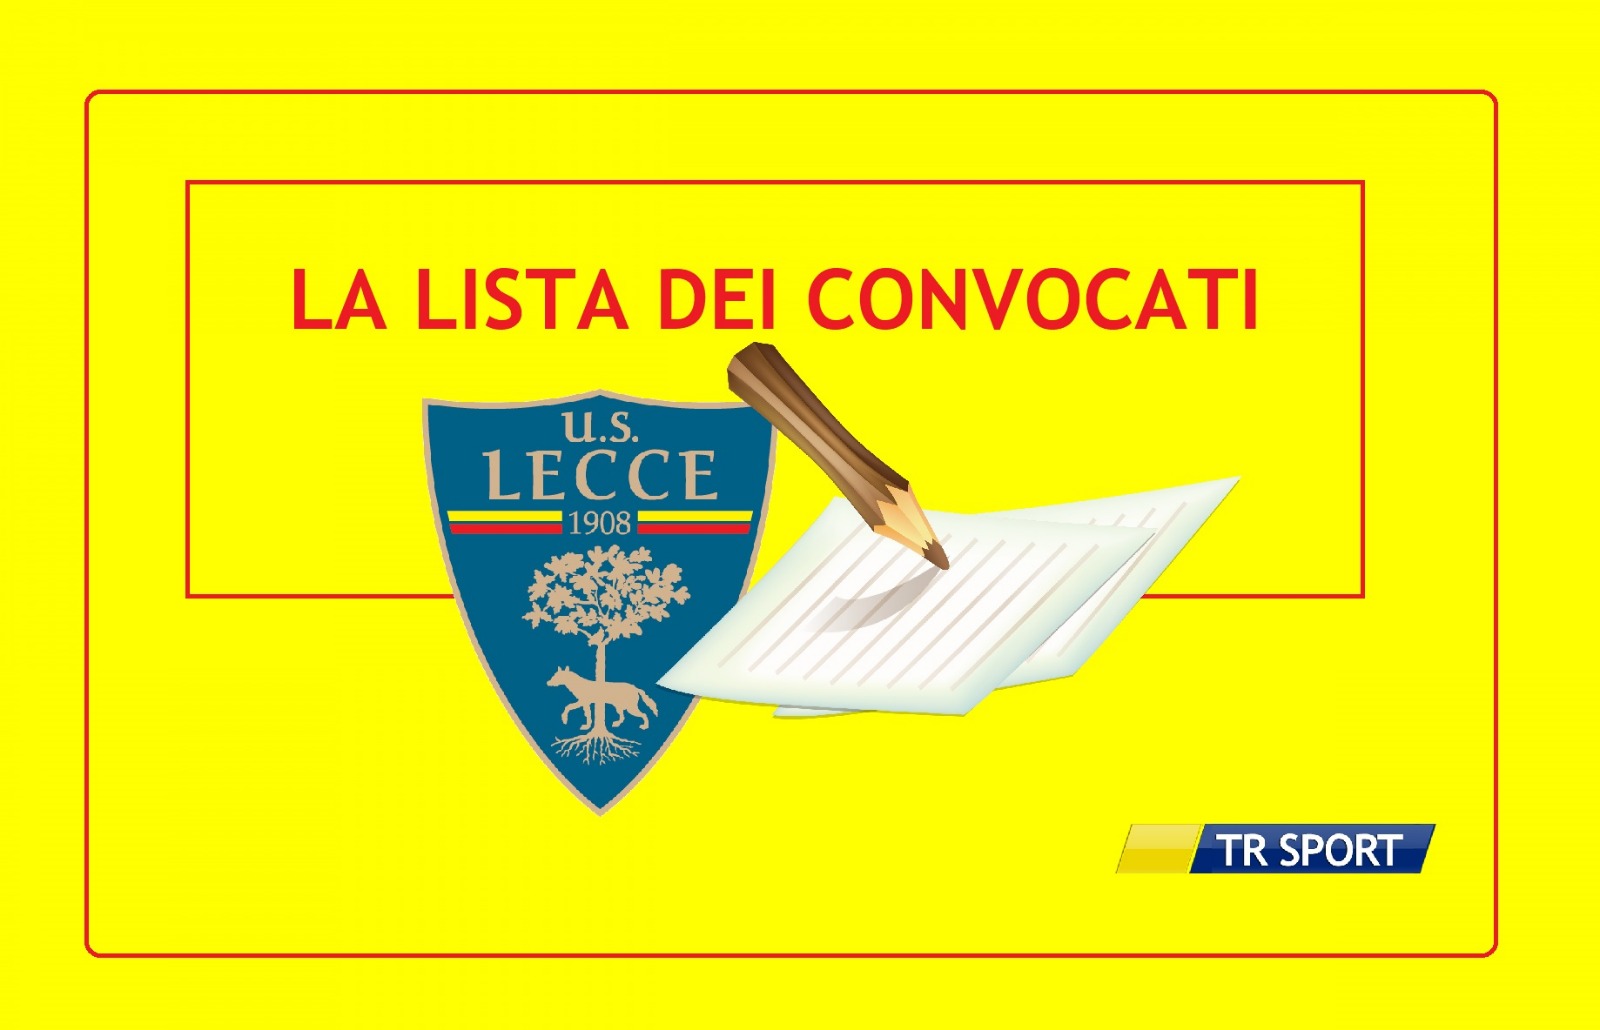 Convocati Lecce